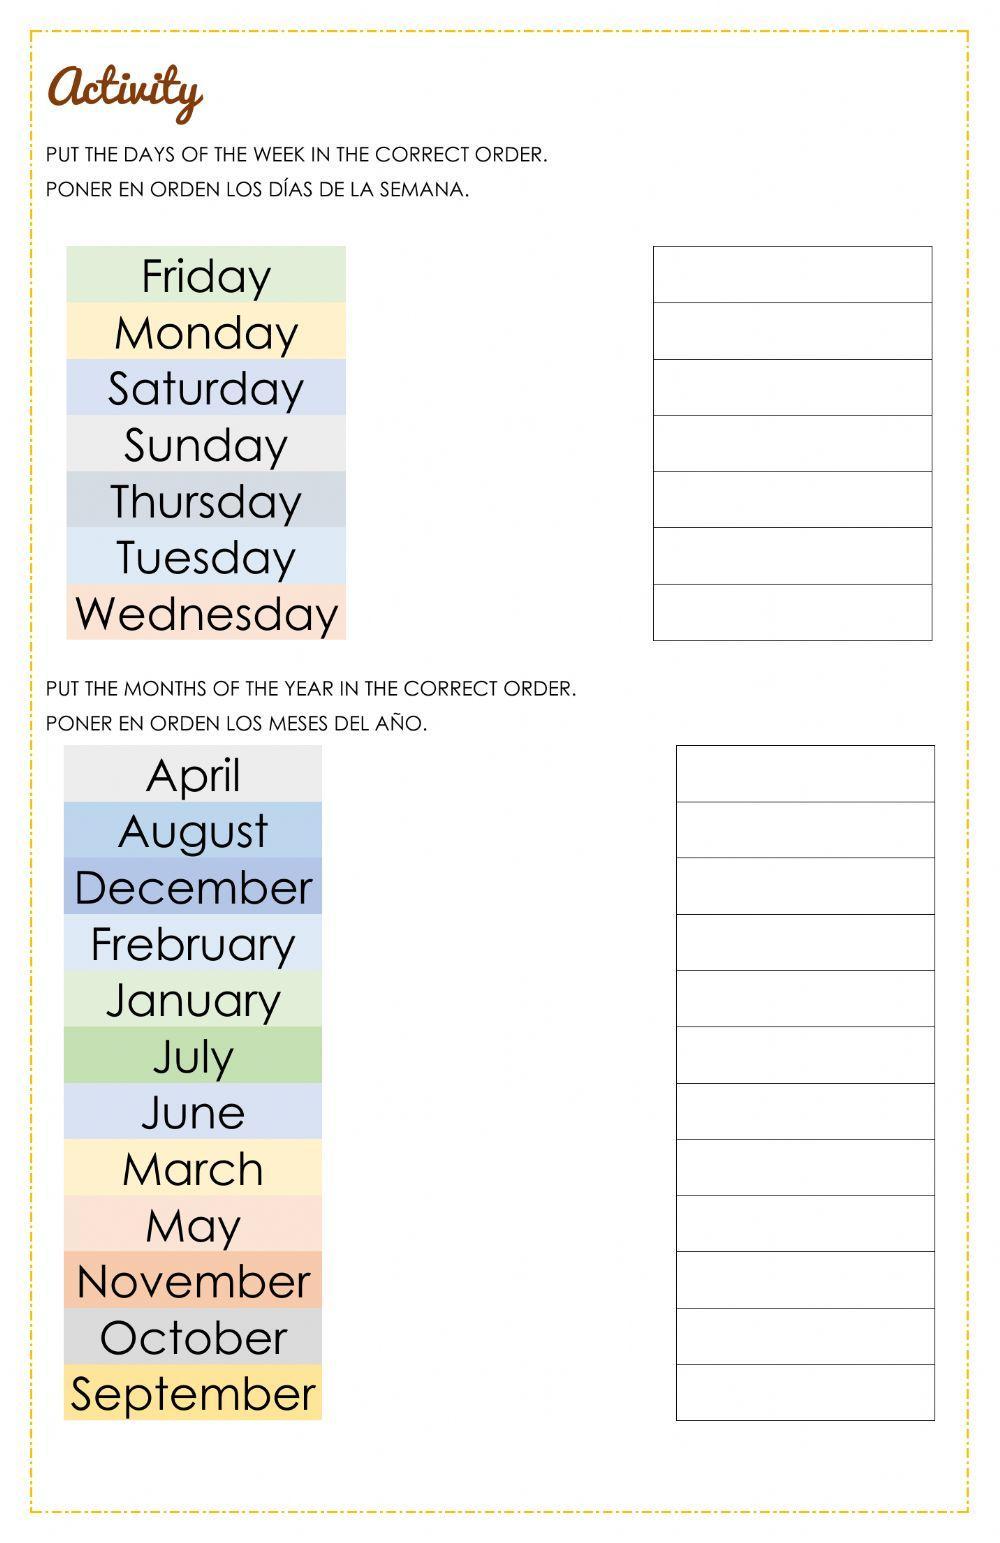 Dias da Semana e Meses do Ano em Inglês